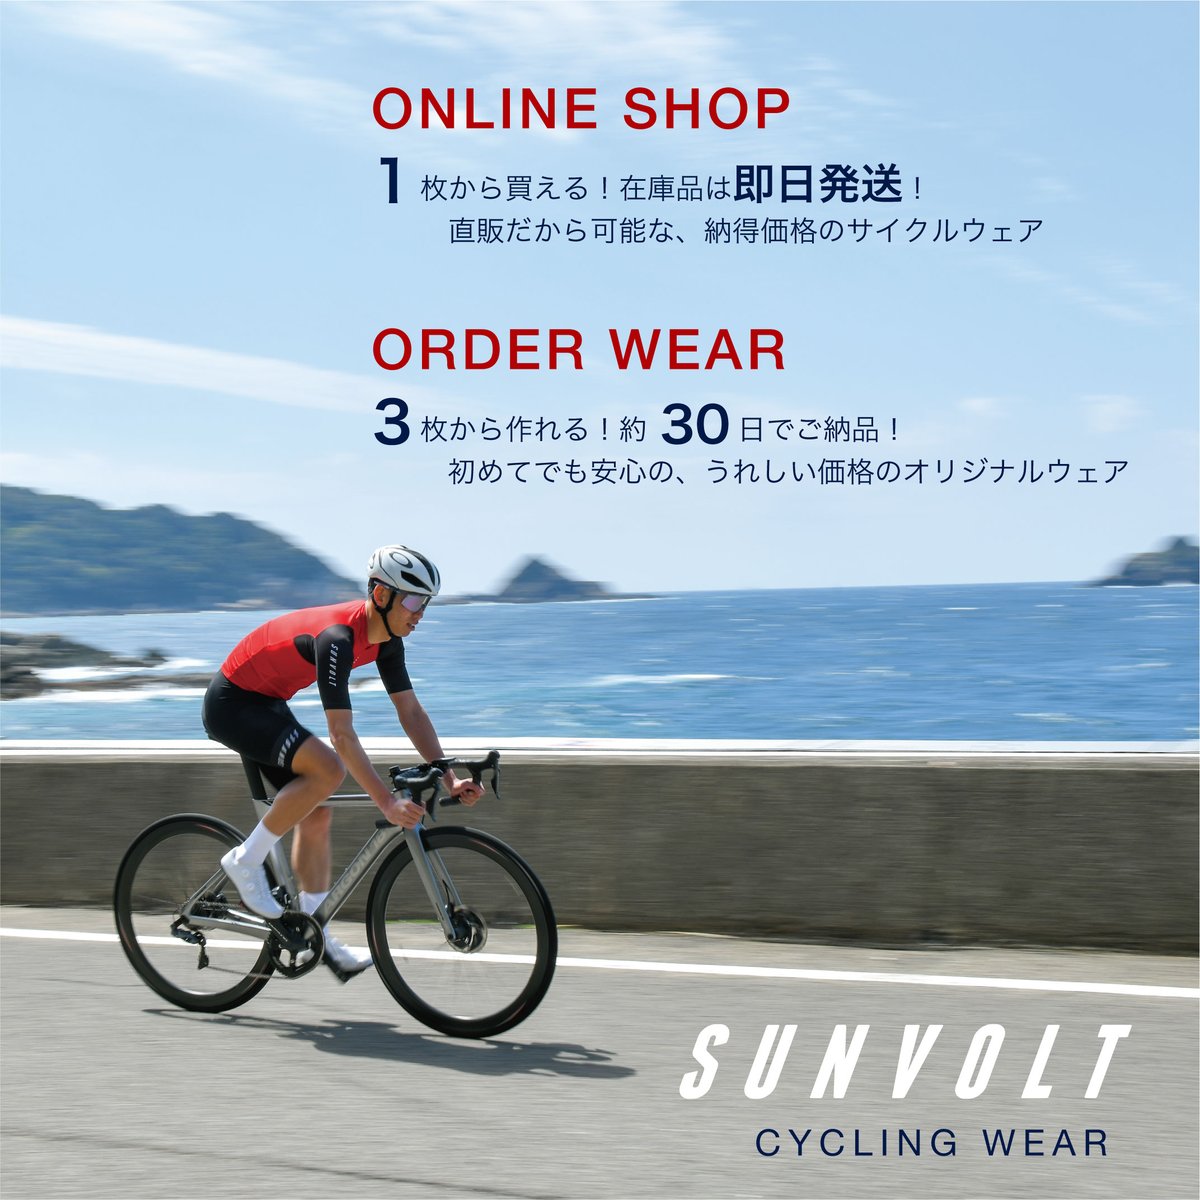 SUNVOLT（サンボルト株式会社） (@sunvolt_info) / X